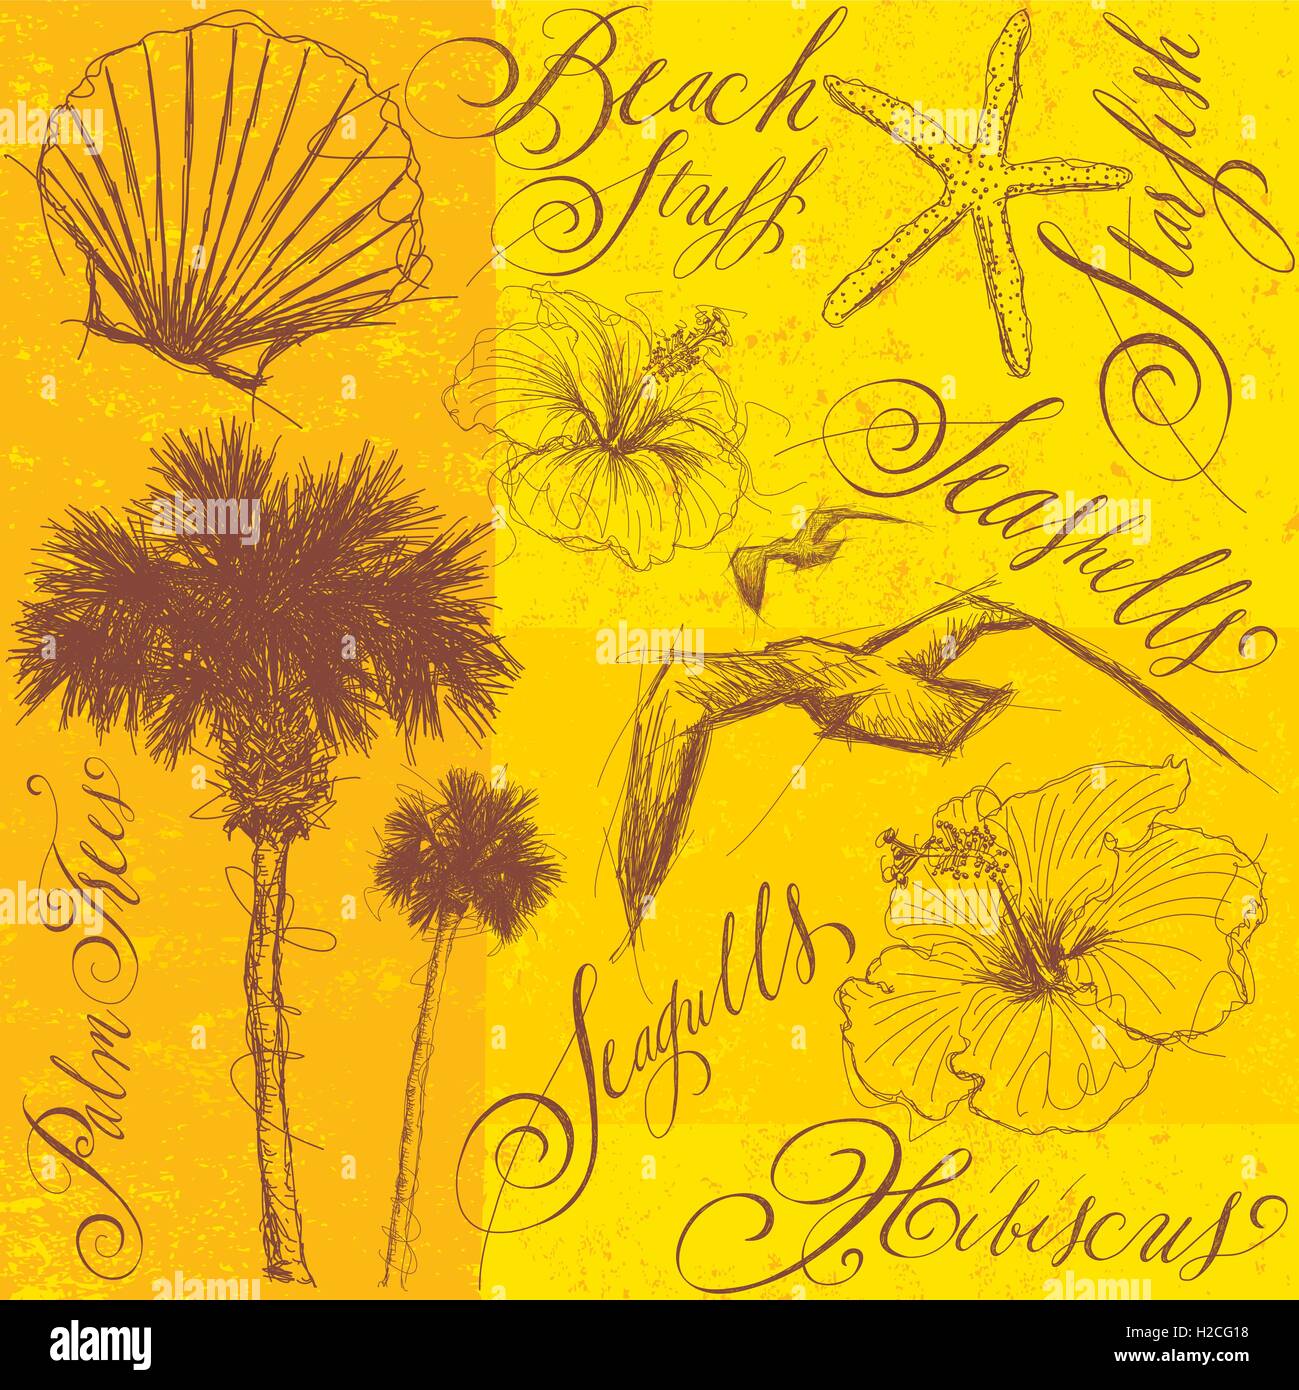 Beach stuff Sketchy, dessinés à la main, palmiers, mouettes, hibiscus, et les coquilles avec la calligraphie. Illustration de Vecteur